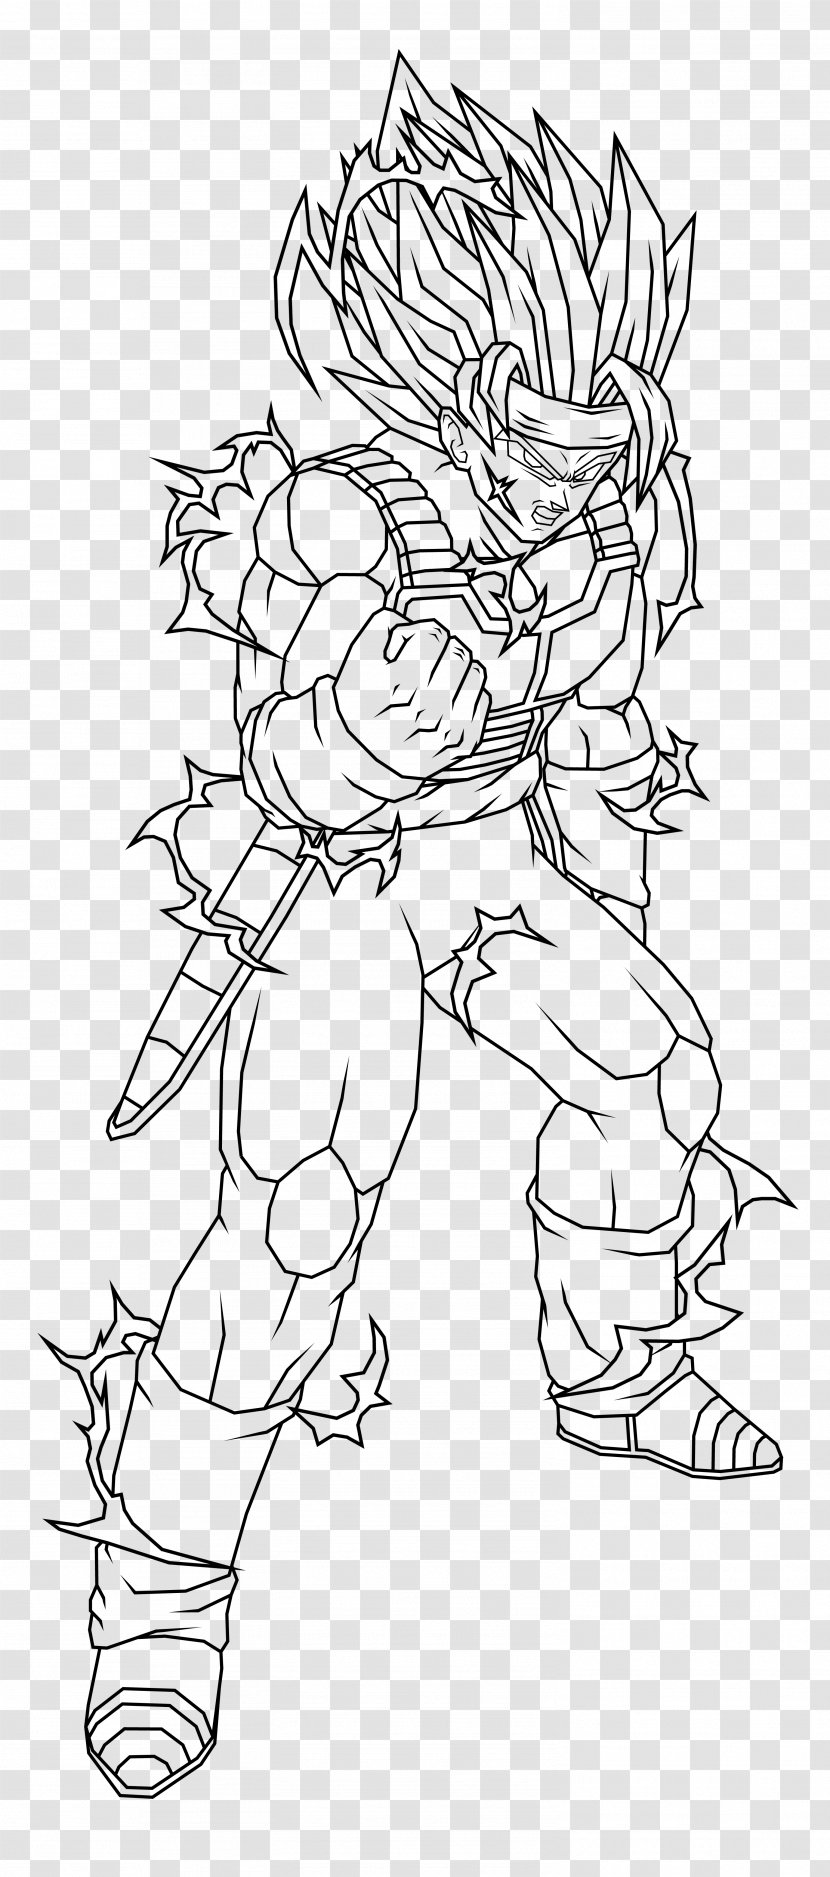 Gohan Goku Trunks Vegeta Super Saiyan - Figure Drawing Transparent PNG